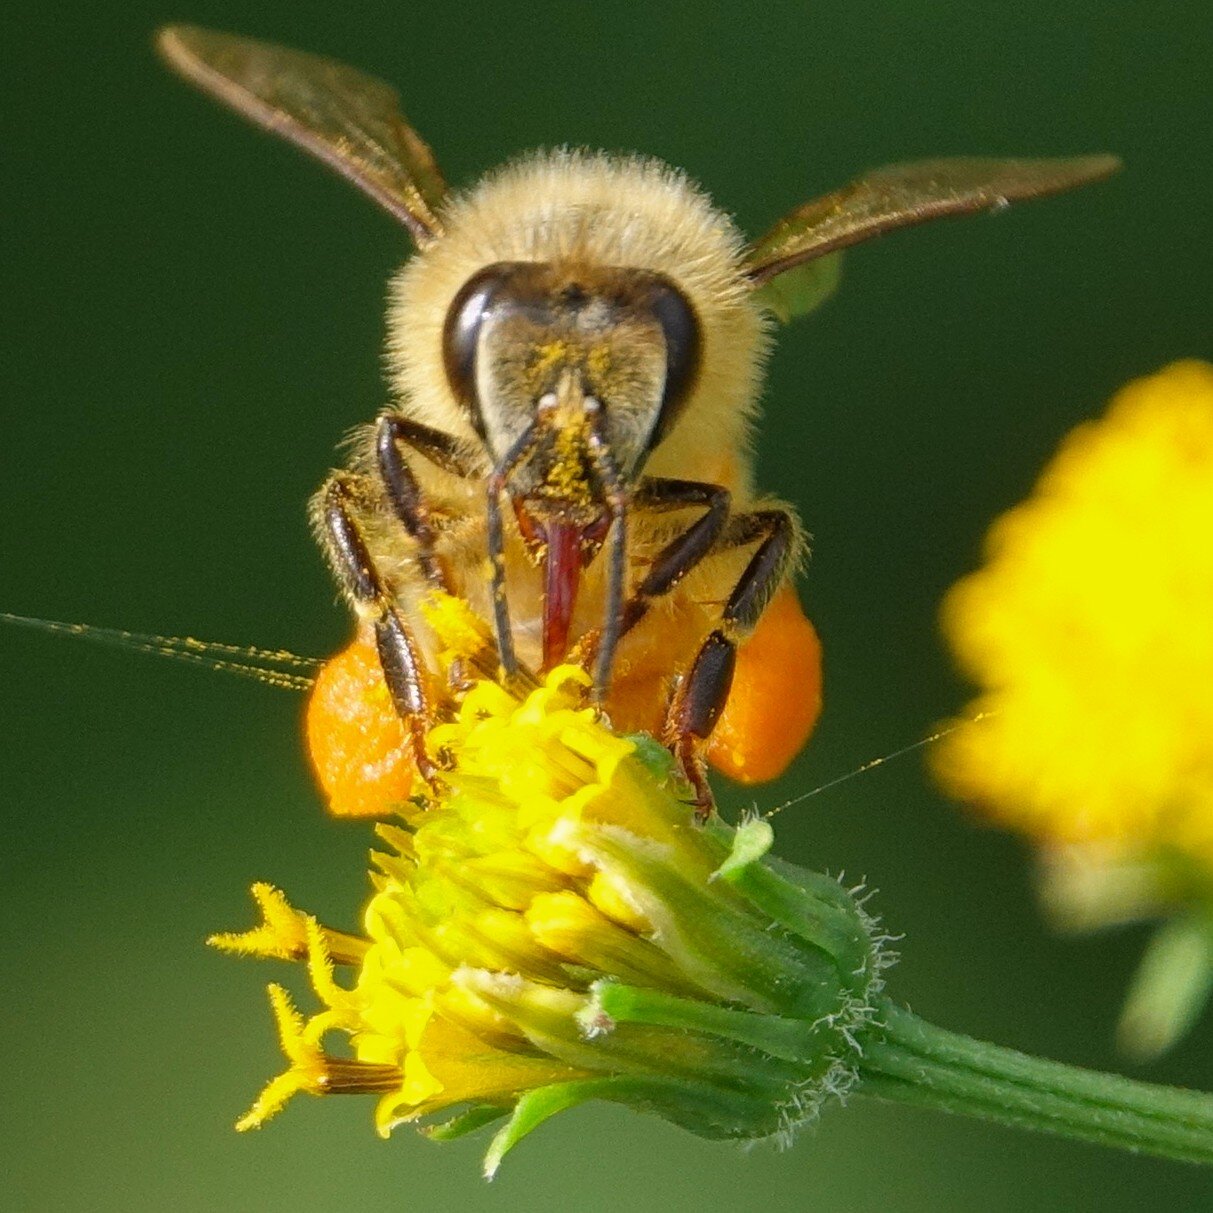 Zdjęcie przedstawia pszczołę, która znajduje się na kwiecie i pobiera nektar za pomocą owłosionego języczka. Pszczoła jest pokryta żółtymi ziarnami pyłku.